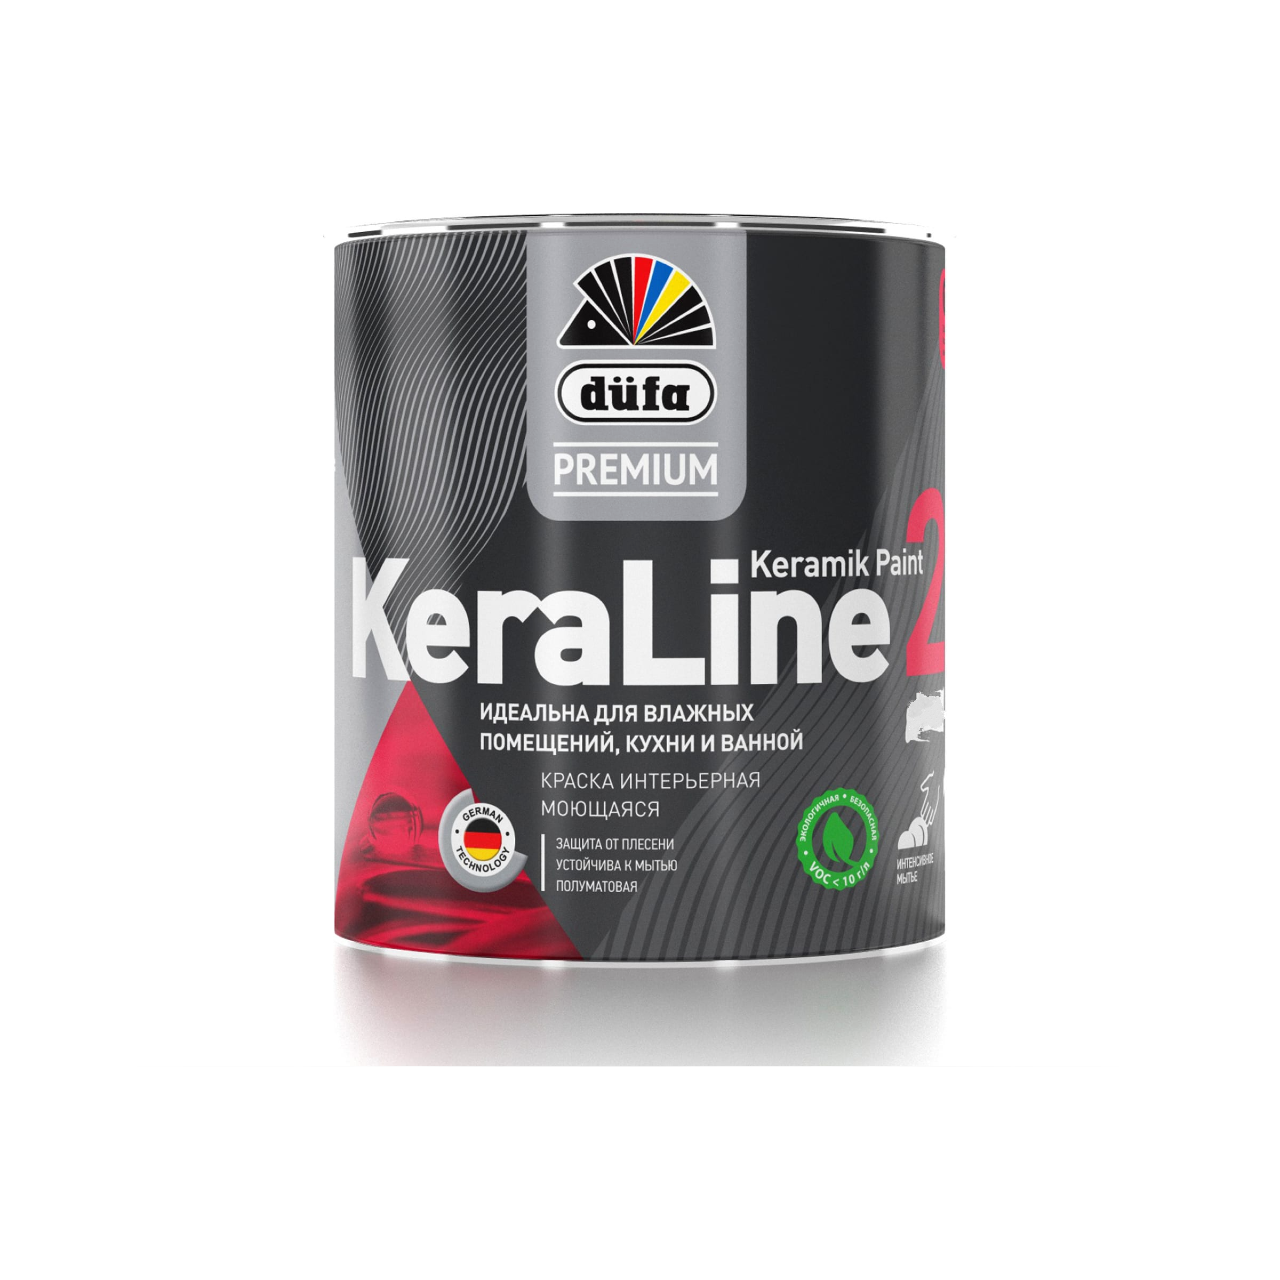 90190639 Краска для влажных помещений Premium KeraLine Keramik Paint 20 полуматовая прозрачная база 3 0.9 л STLM-0126786 DUFA